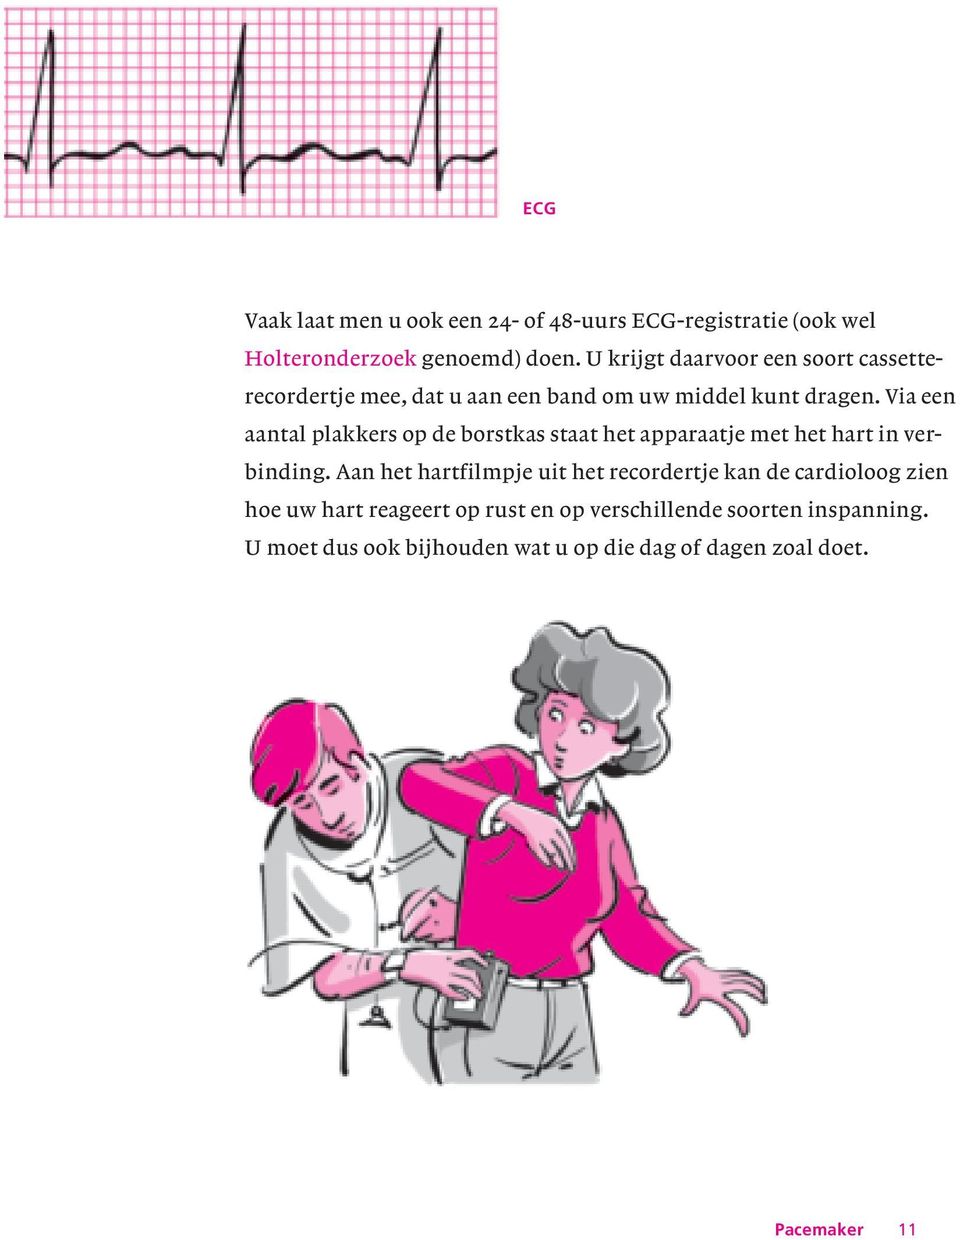 Via een aantal plakkers op de borstkas staat het apparaatje met het hart in verbinding.